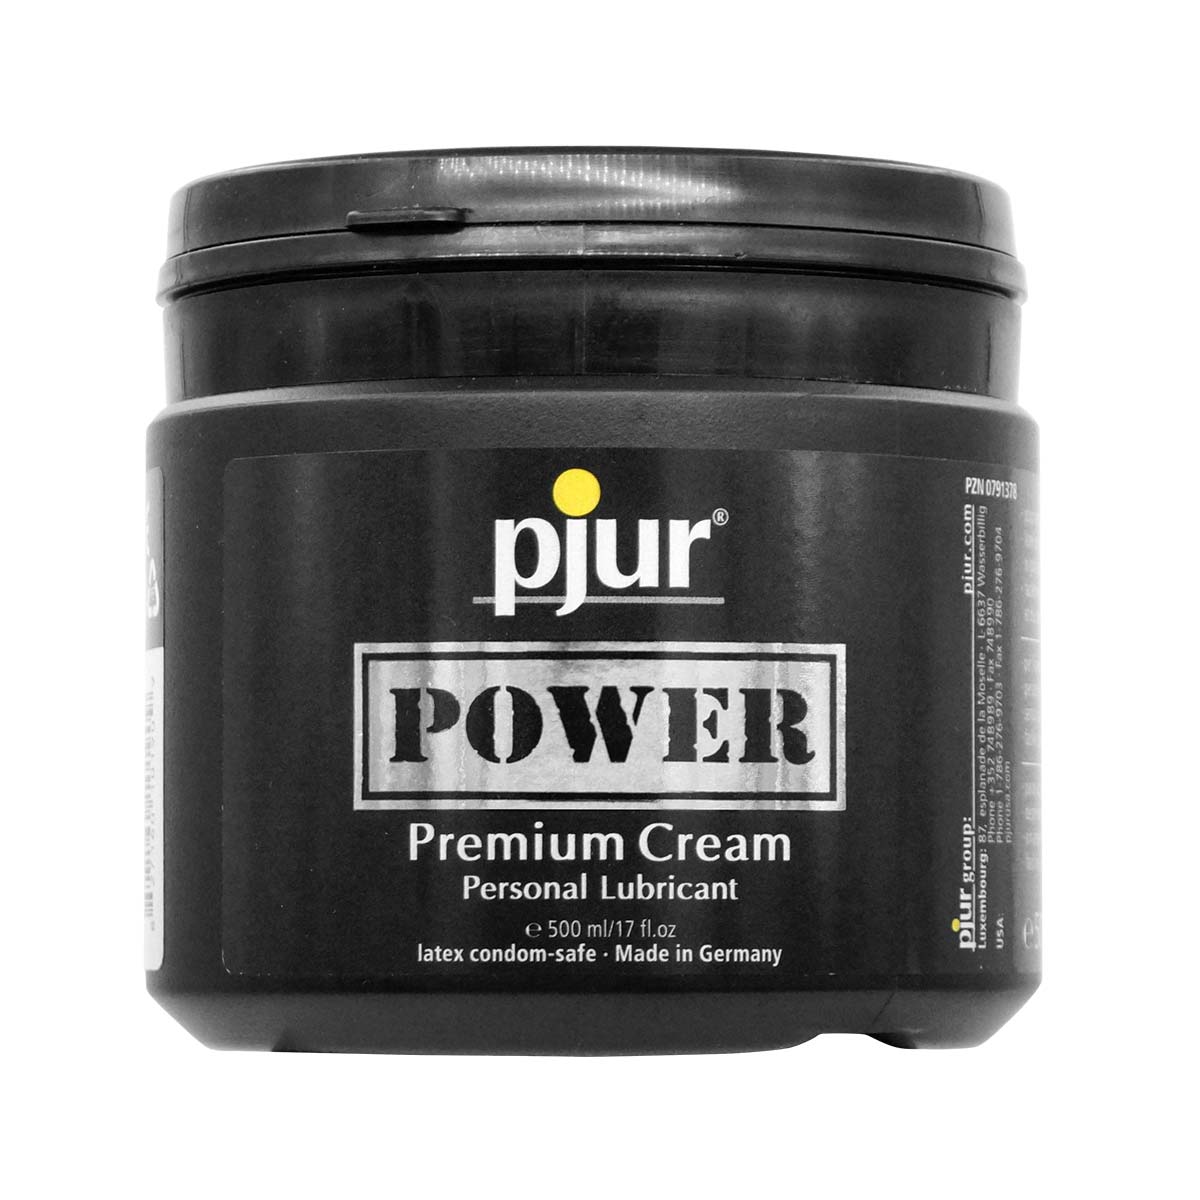 pjur POWER 500ml Premium Cream-p_2